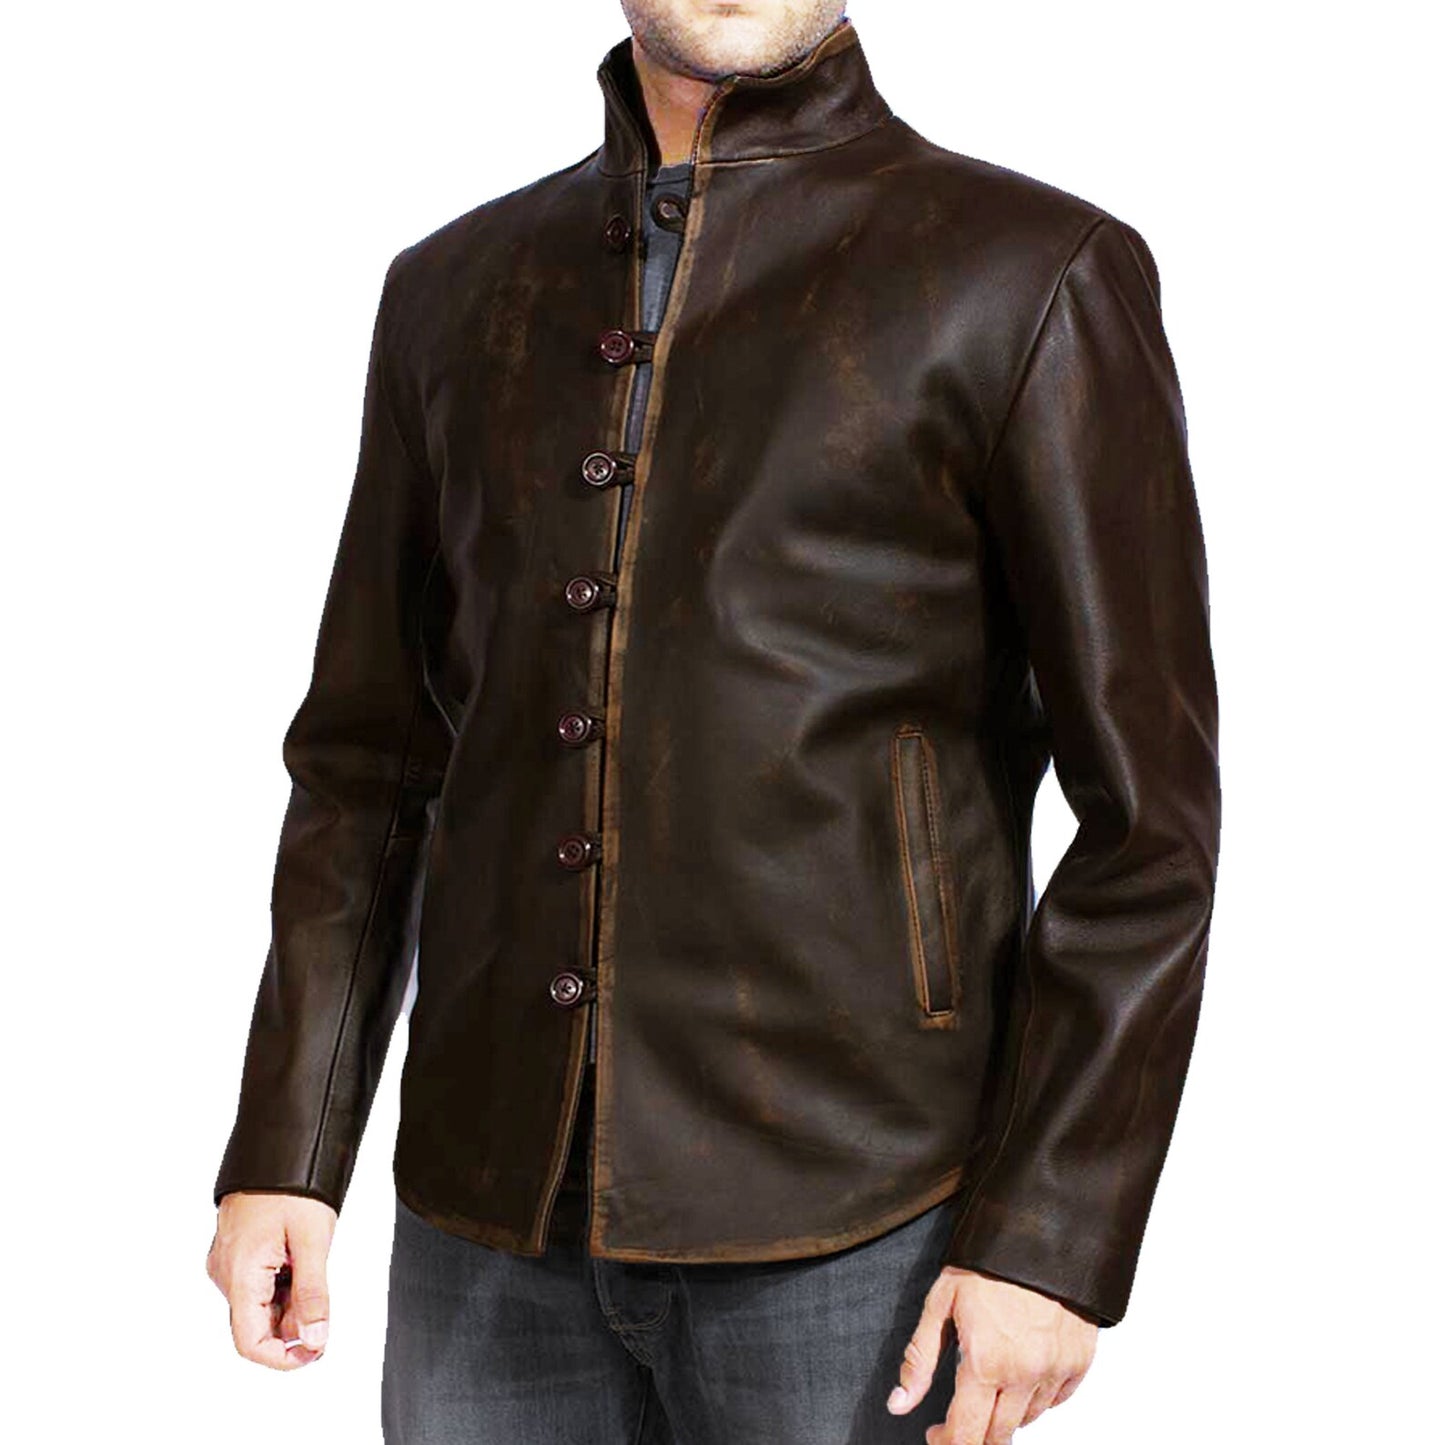 Handmade Vintage Distressed Brown Leather Jacket For Men